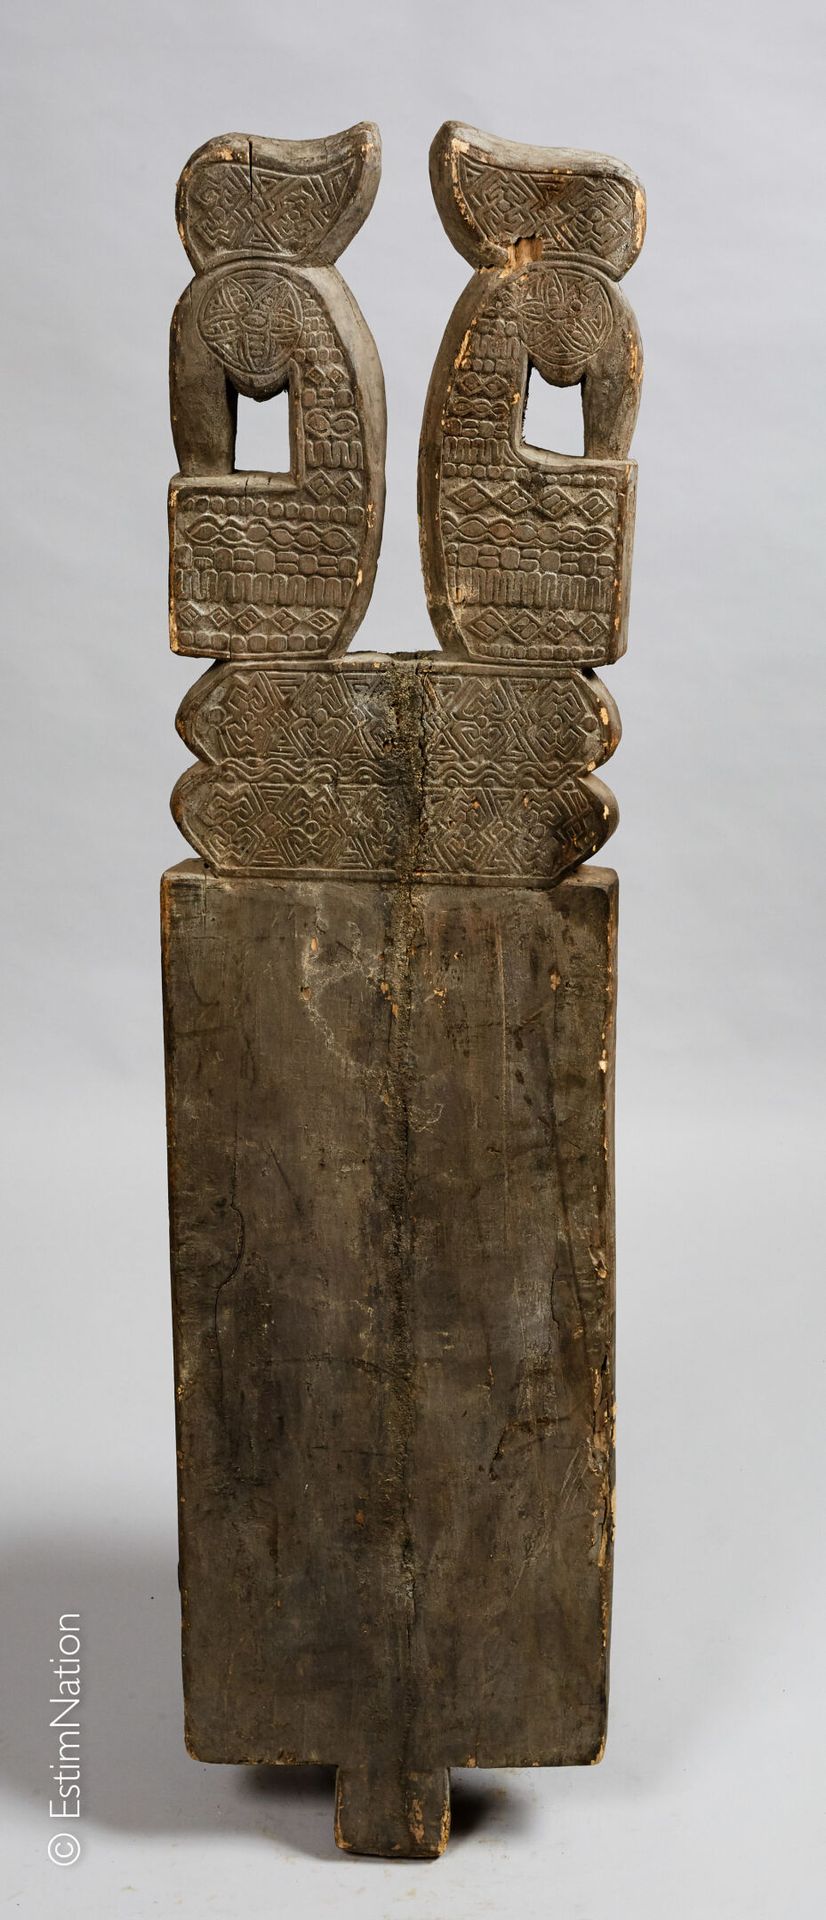 TIMOR 钛合金



雕刻和镌刻的木门，装饰有两只造型鸟和几何楣条。



高度 : 147 cm - 宽度 : 34 cm

(裂缝、磨损和缺失的部分)
&hellip;